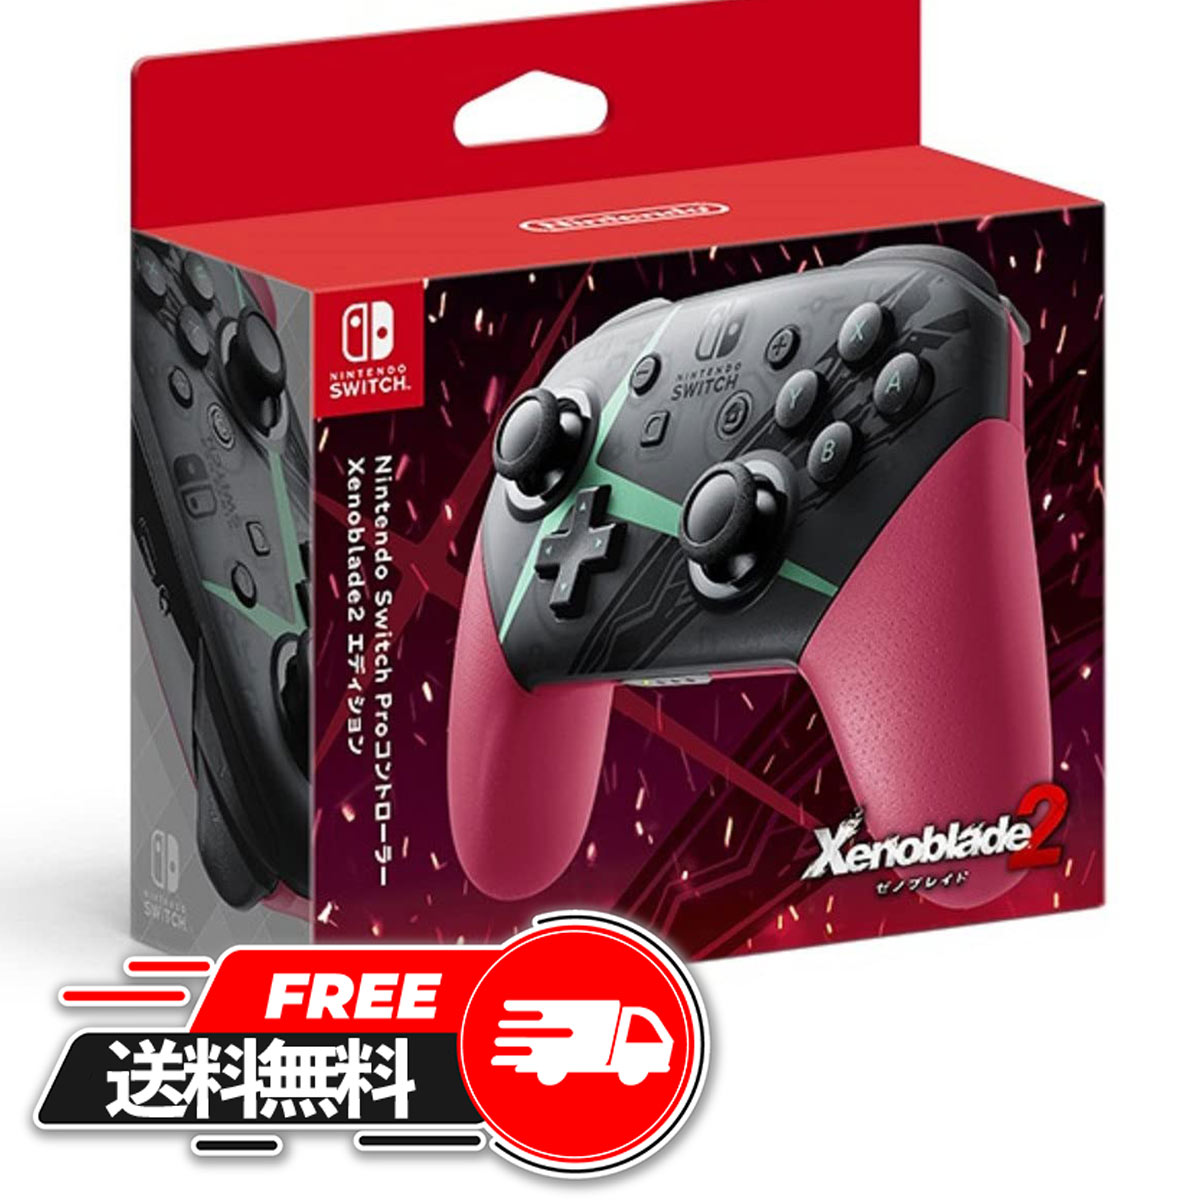  任天堂 Nintendo Switch Proコントローラー Xenoblade2エディション ゼノブレイド 2 ゼノブレイド2 ゼノブレイド3 ダウンロード版 オリジナル・サウンドトラック ザ・コンプリートガイド パーフェクトガイド